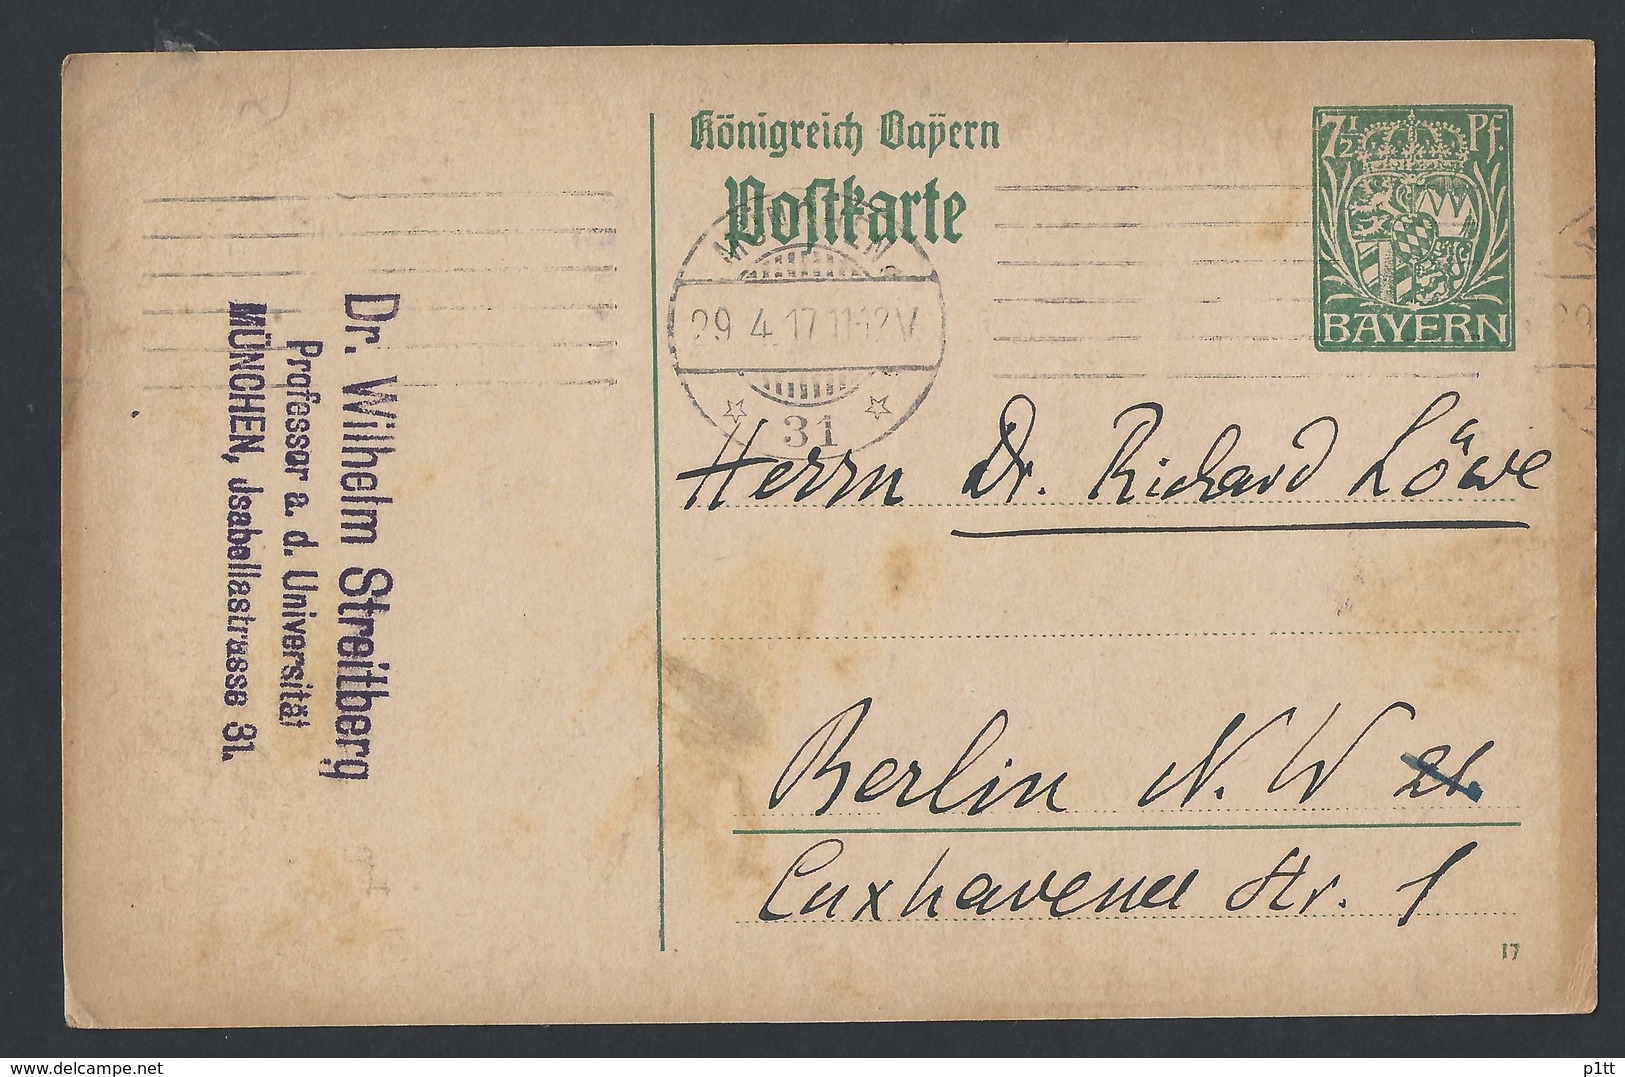 8de.Postkarte Von Bayern. Die Post Ging Durch 1917 München Berlin. Professor Für Gotische Sprache.Maschinenstempel. - Lettres & Documents